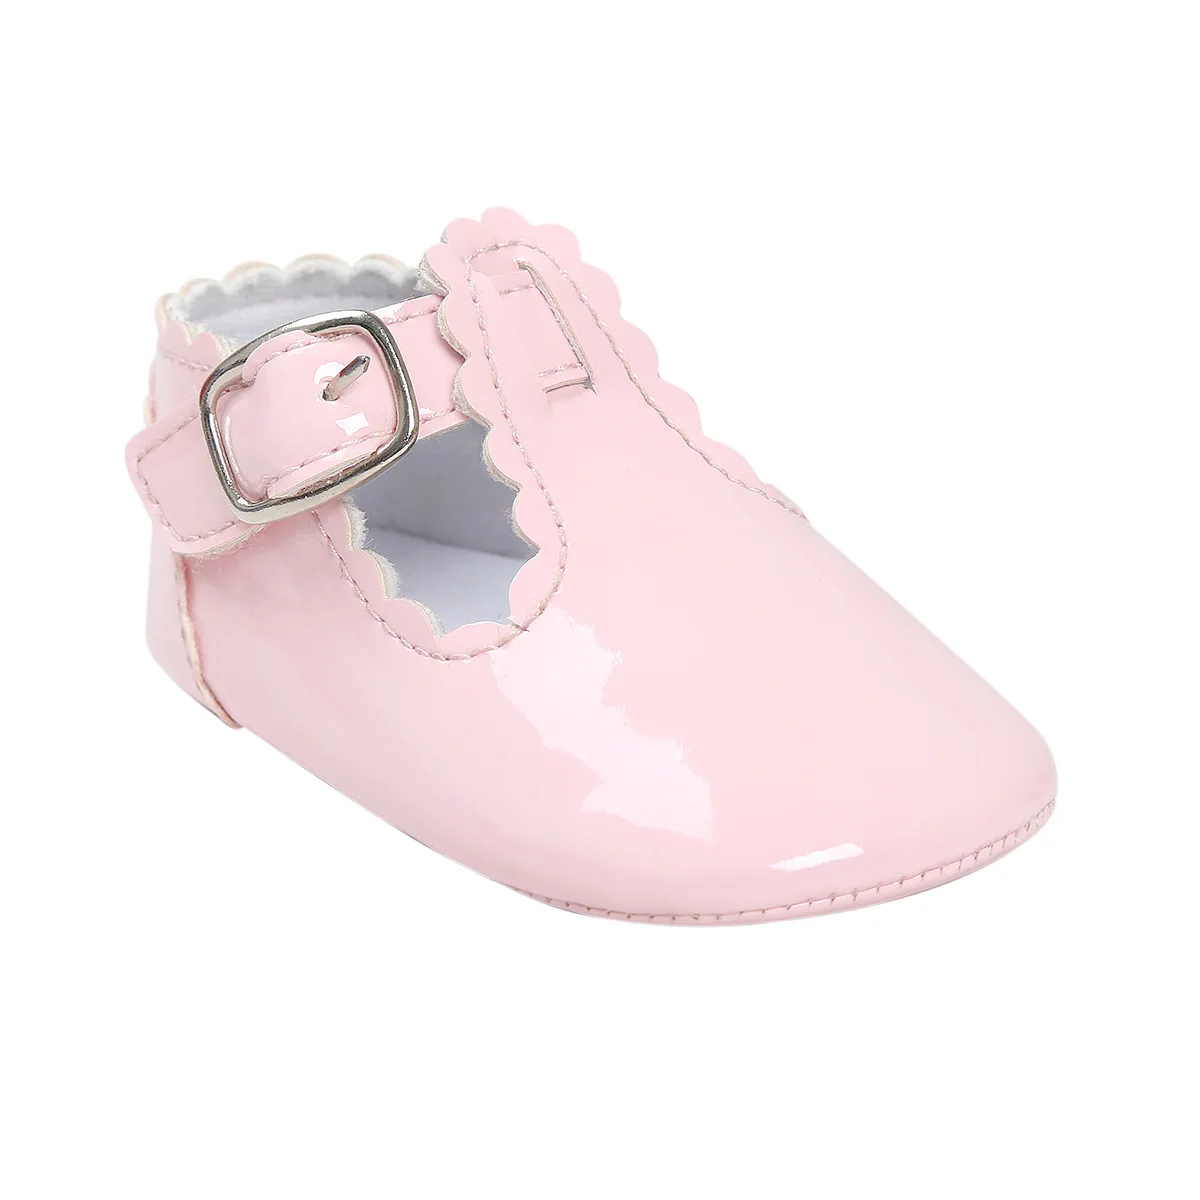 Искусственная кожа, для новорожденных маленьких мальчиков и девочек, детские Мокасины Мягкие Moccs обувь Bebe бахрома мягкая подошва Нескользящая обувь для колыбельки CX42C